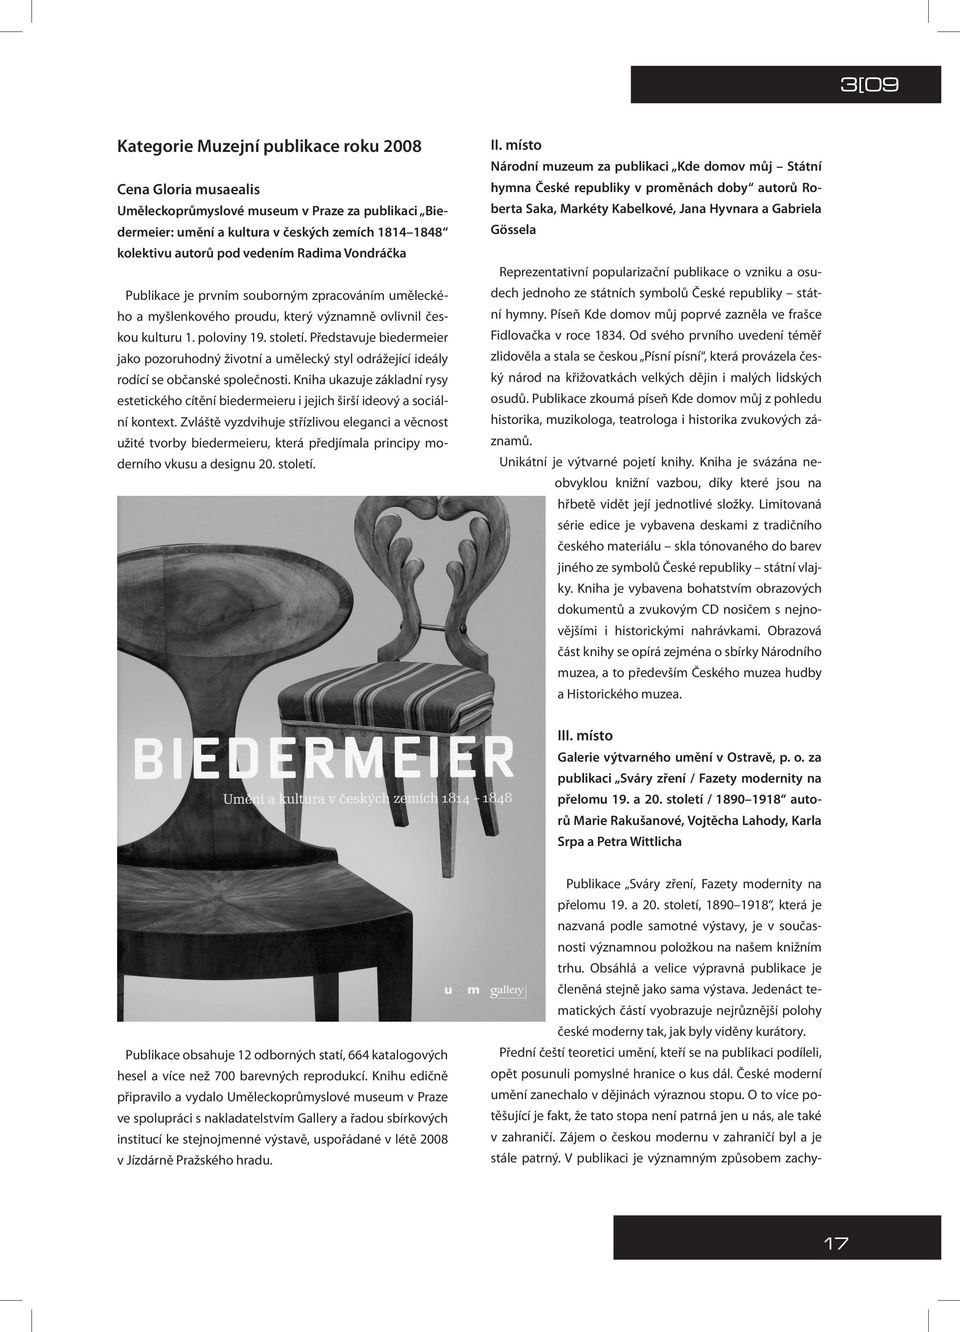 Představuje biedermeier jako pozoruhodný životní a umělecký styl odrážející ideály rodící se občanské společnosti.